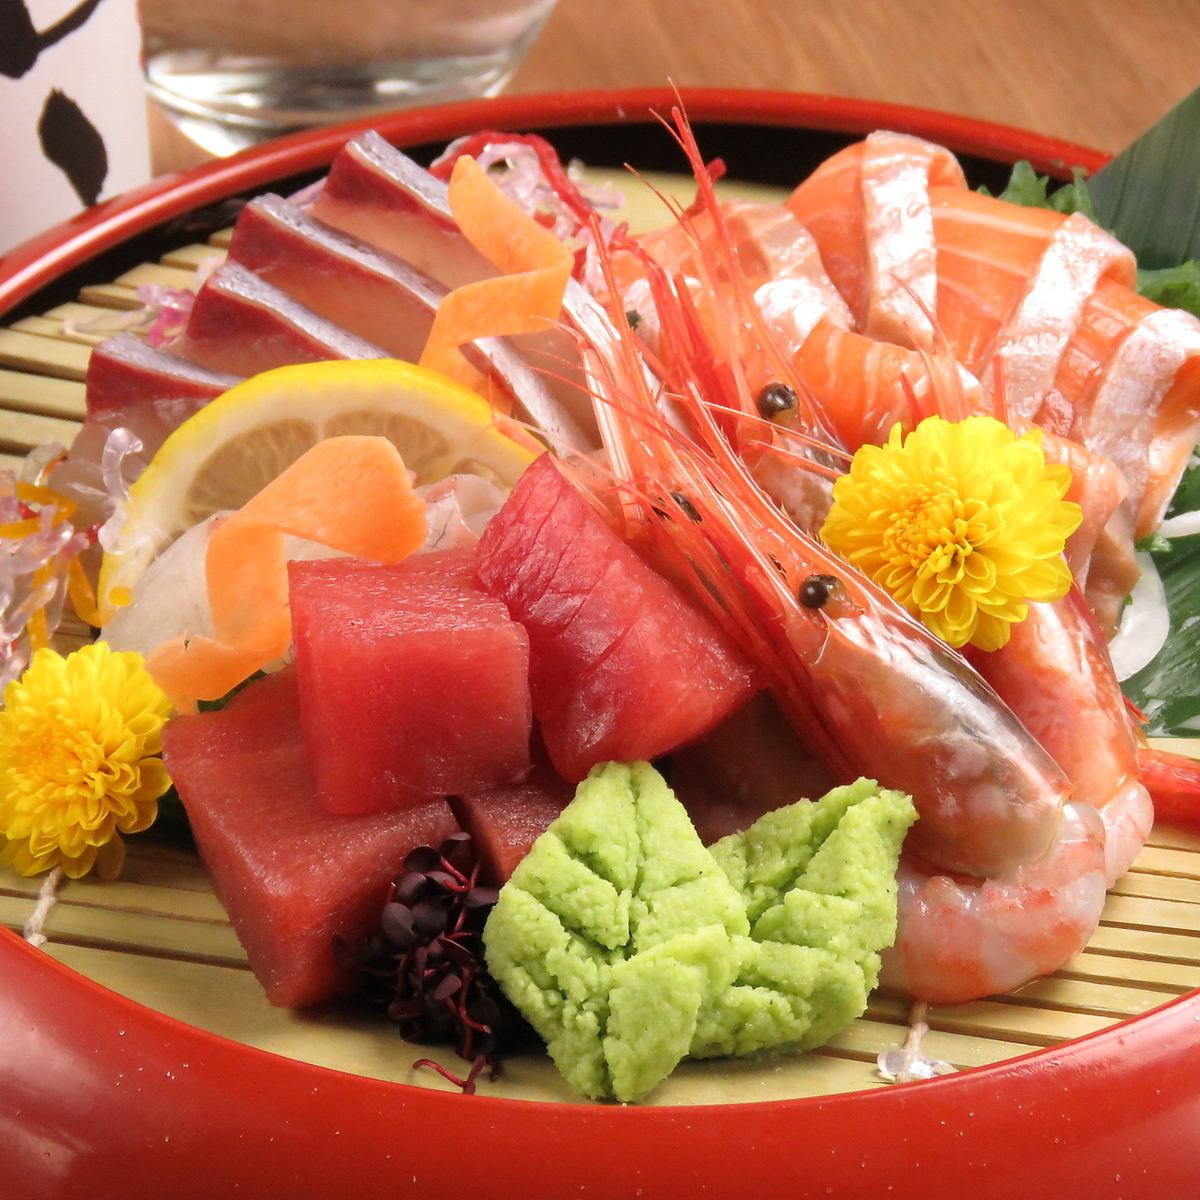 産地直送・市場買付した鮮魚を刺身・揚げ物・手巻き寿司でどうぞ